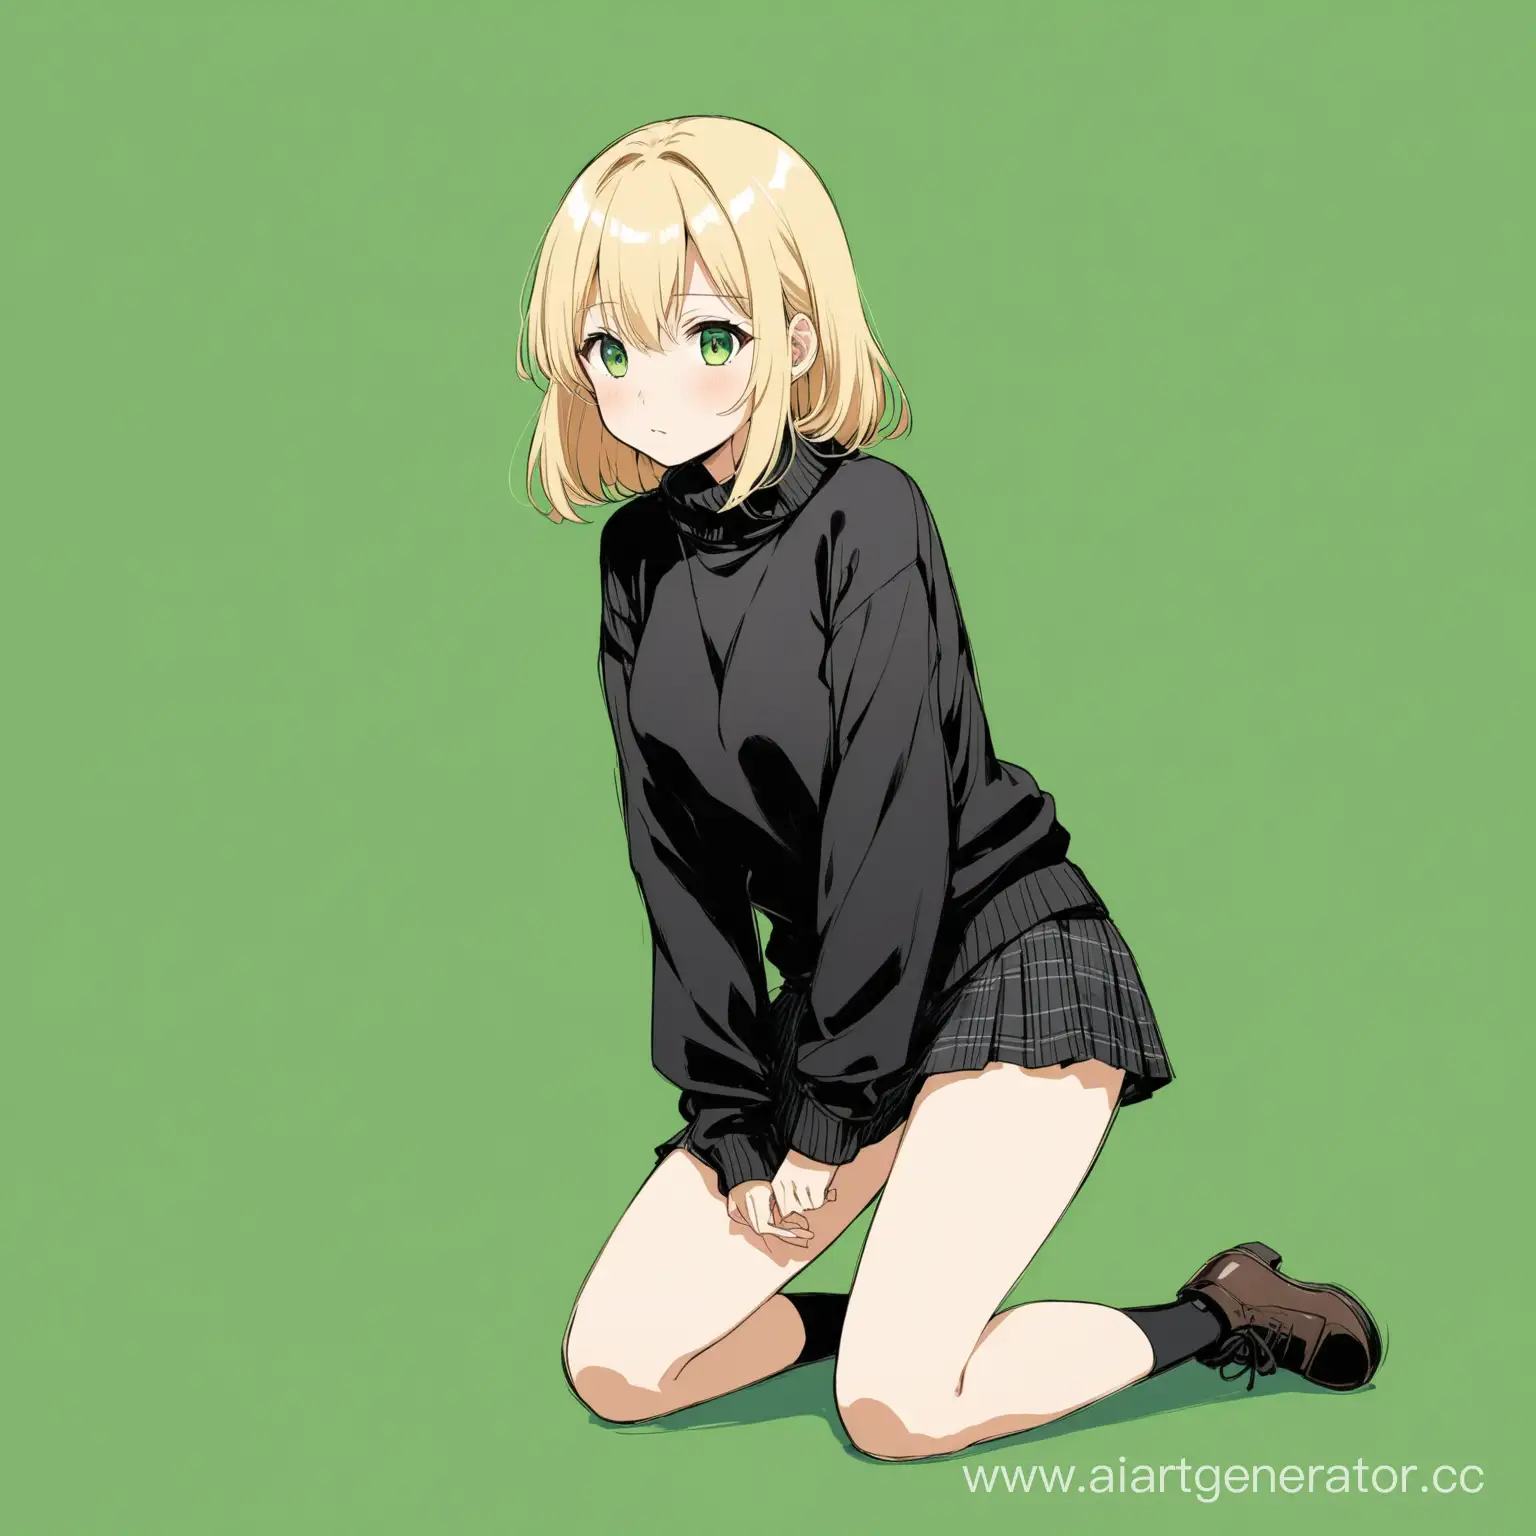 аниме девочка блондинка в чёрный свитере и юбке во весь рост стоит на зелёном фоне